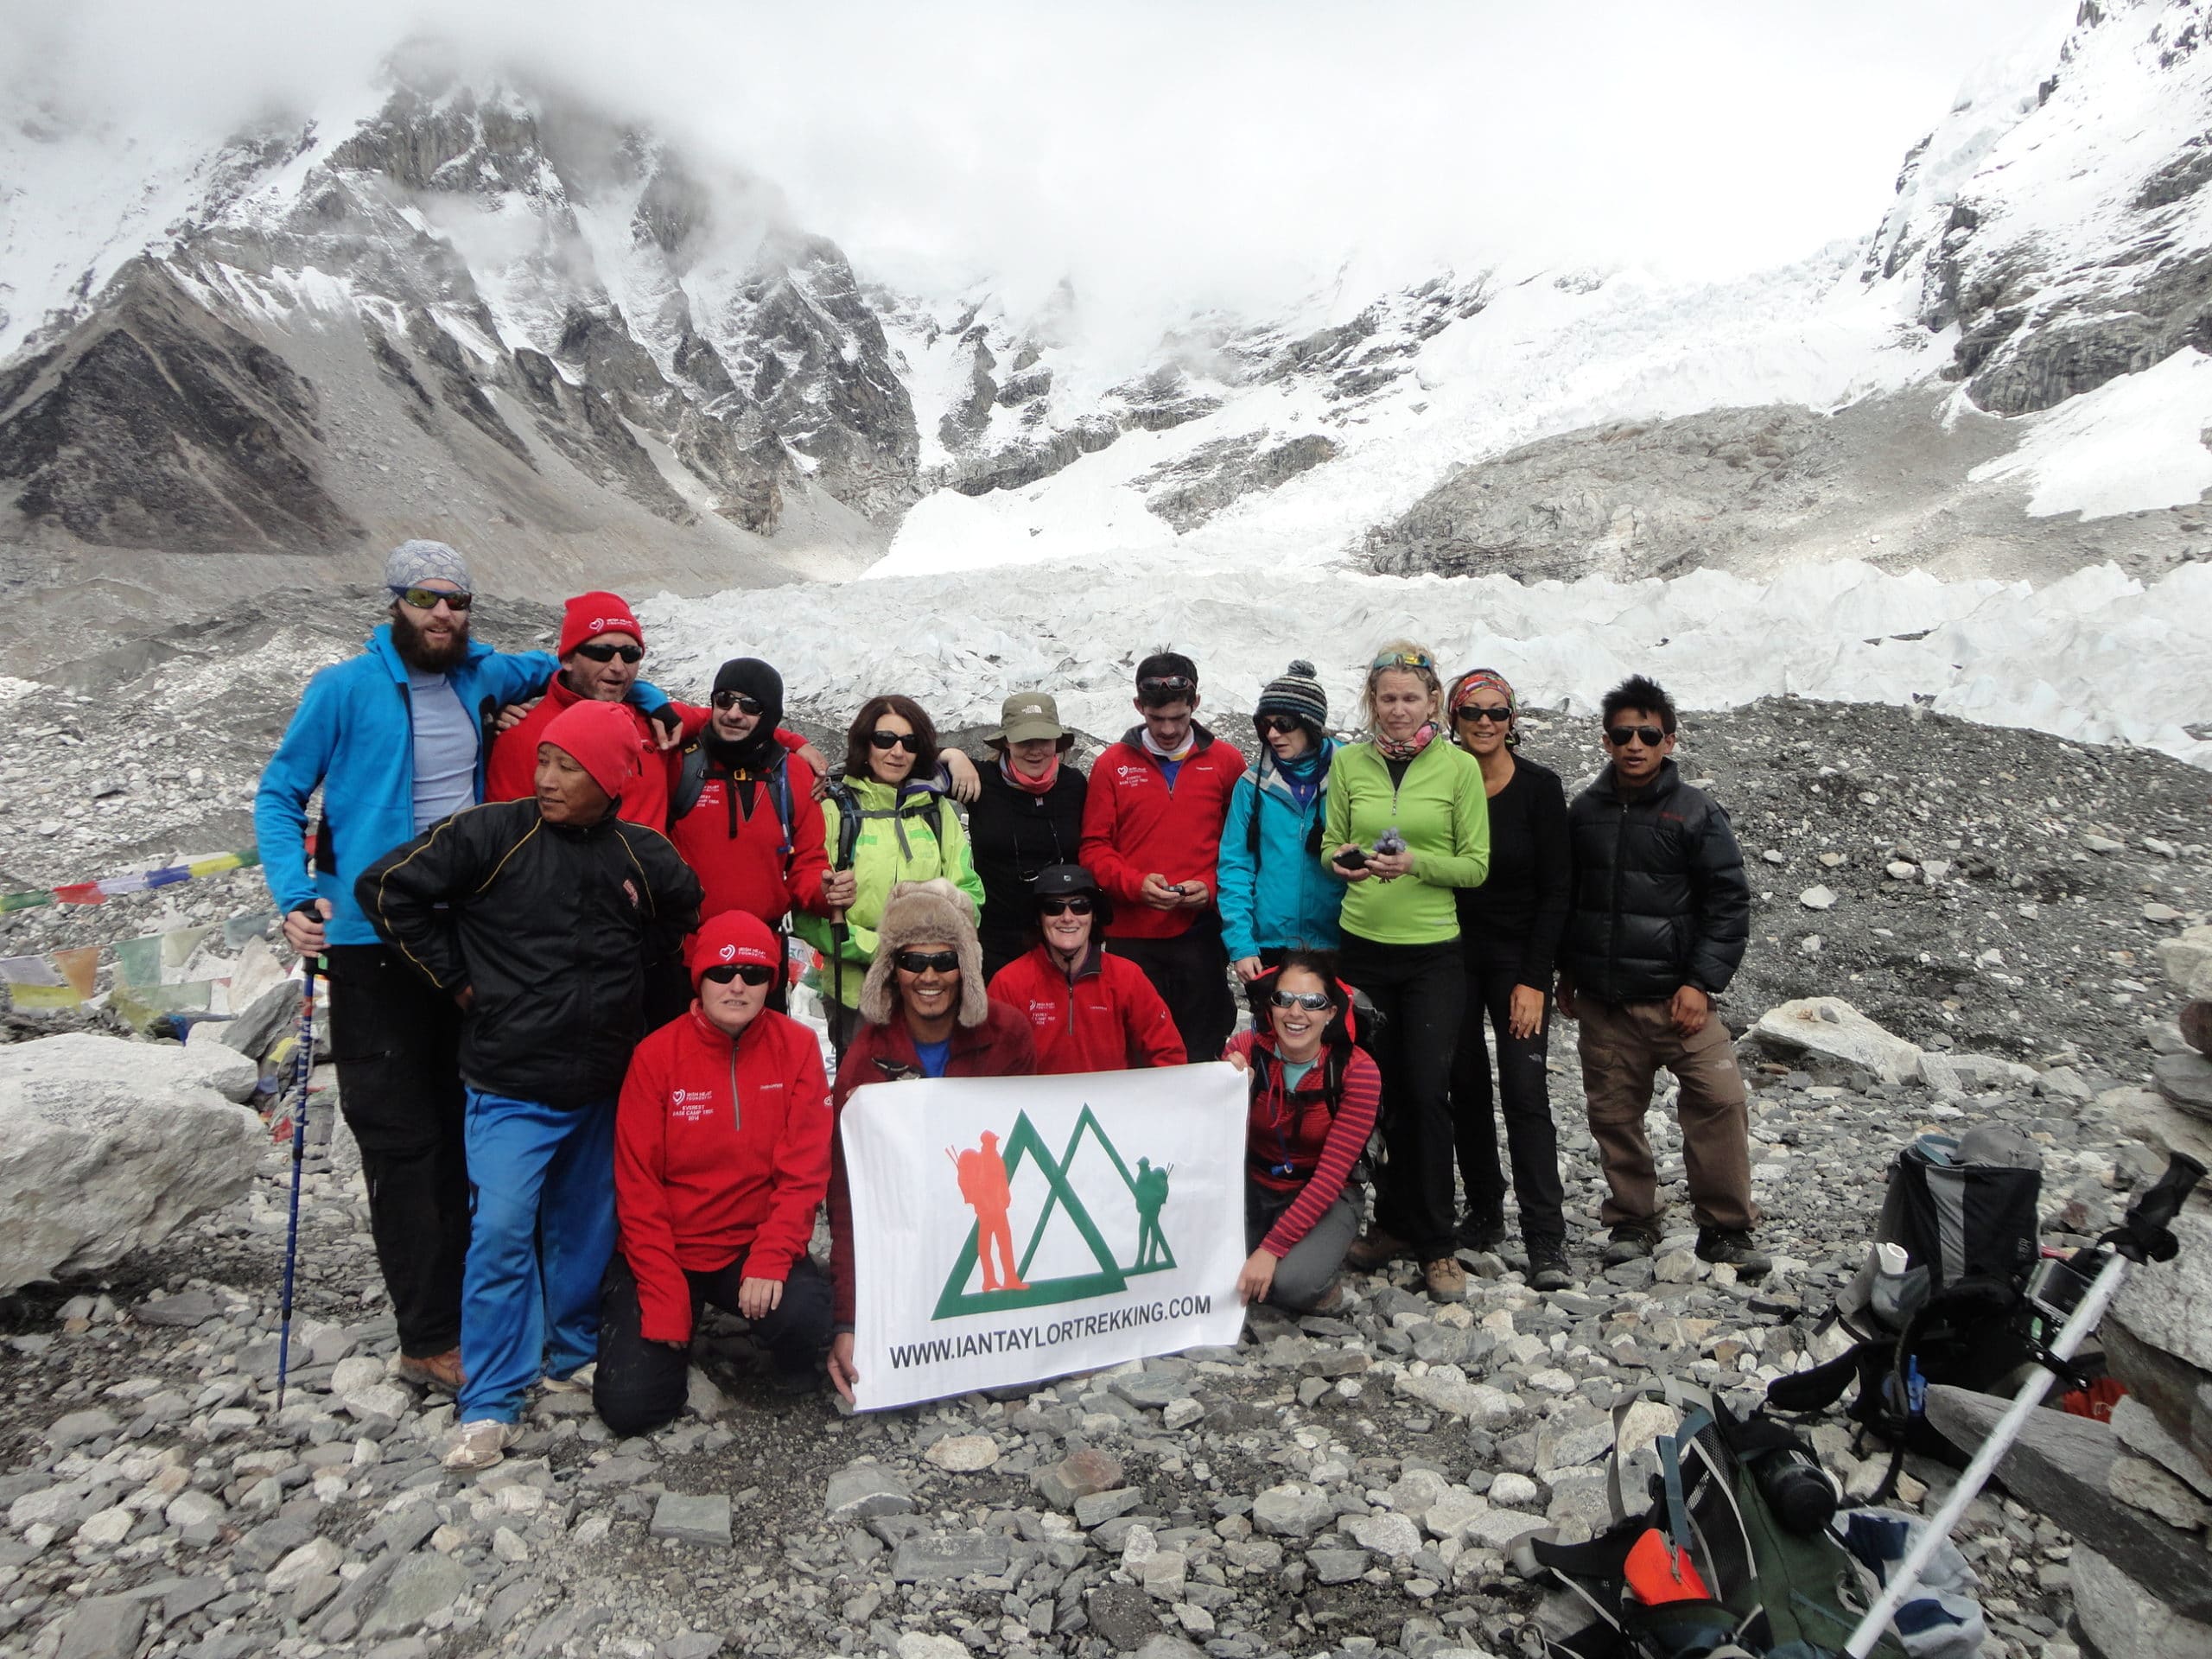 Just after we arrived in Everest Base Camp